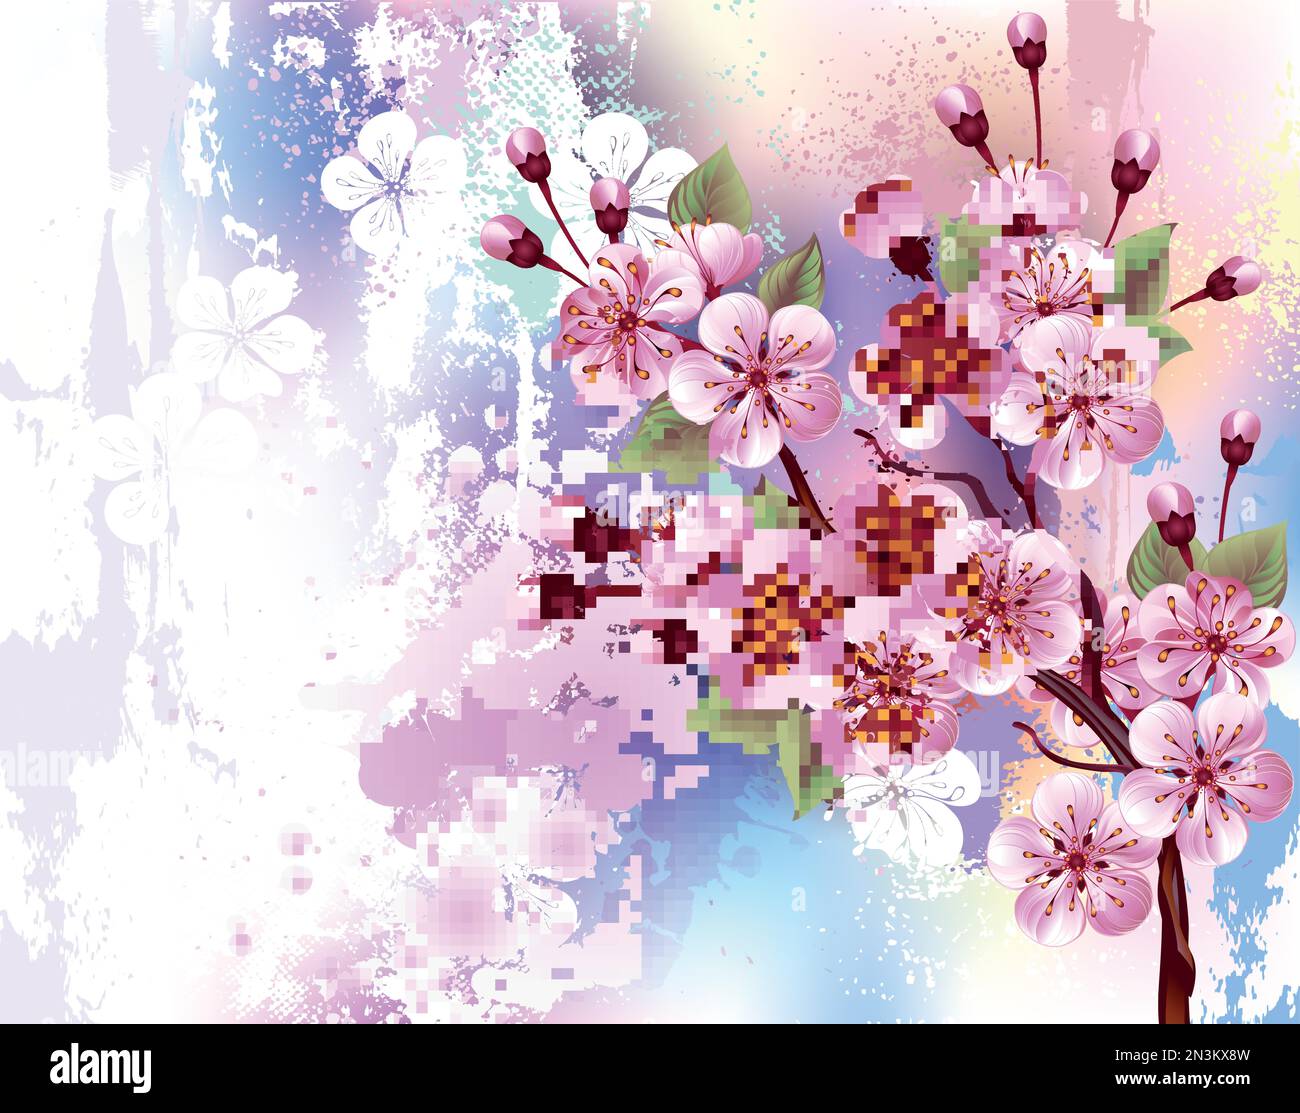 Disegnato artisticamente, ramo di rosa, fiori di ciliegio su sfondo pittoresco, testurizzato, dipinto con vernice bianca, rosa e blu. Sakura rosa Illustrazione Vettoriale